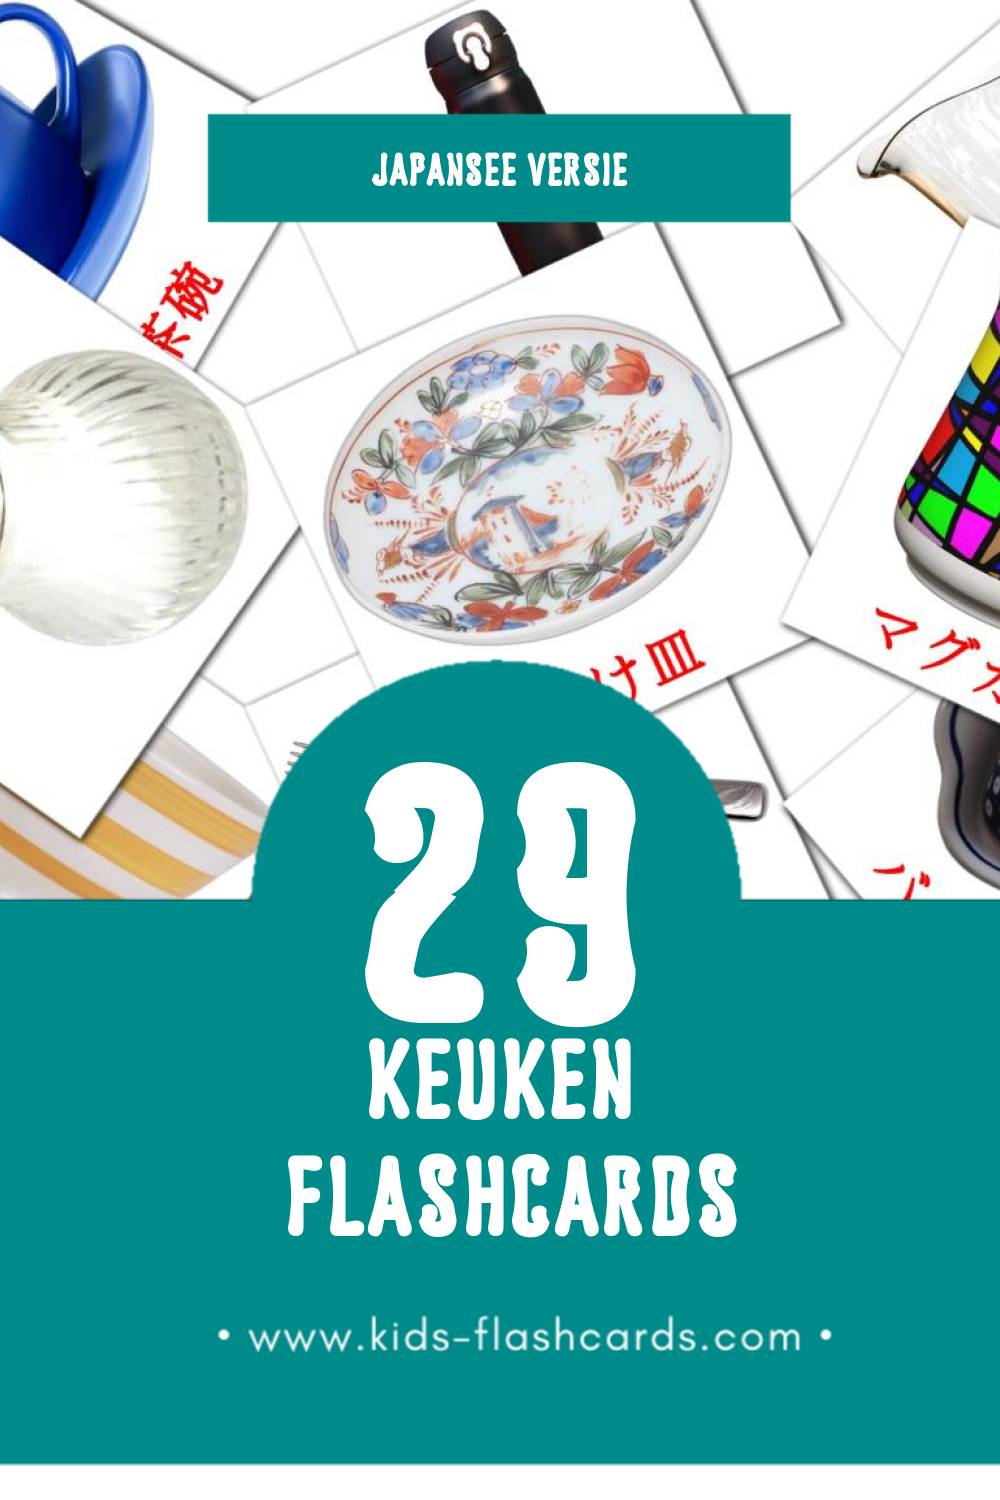 Visuele キッチン Flashcards voor Kleuters (29 kaarten in het Japanse)